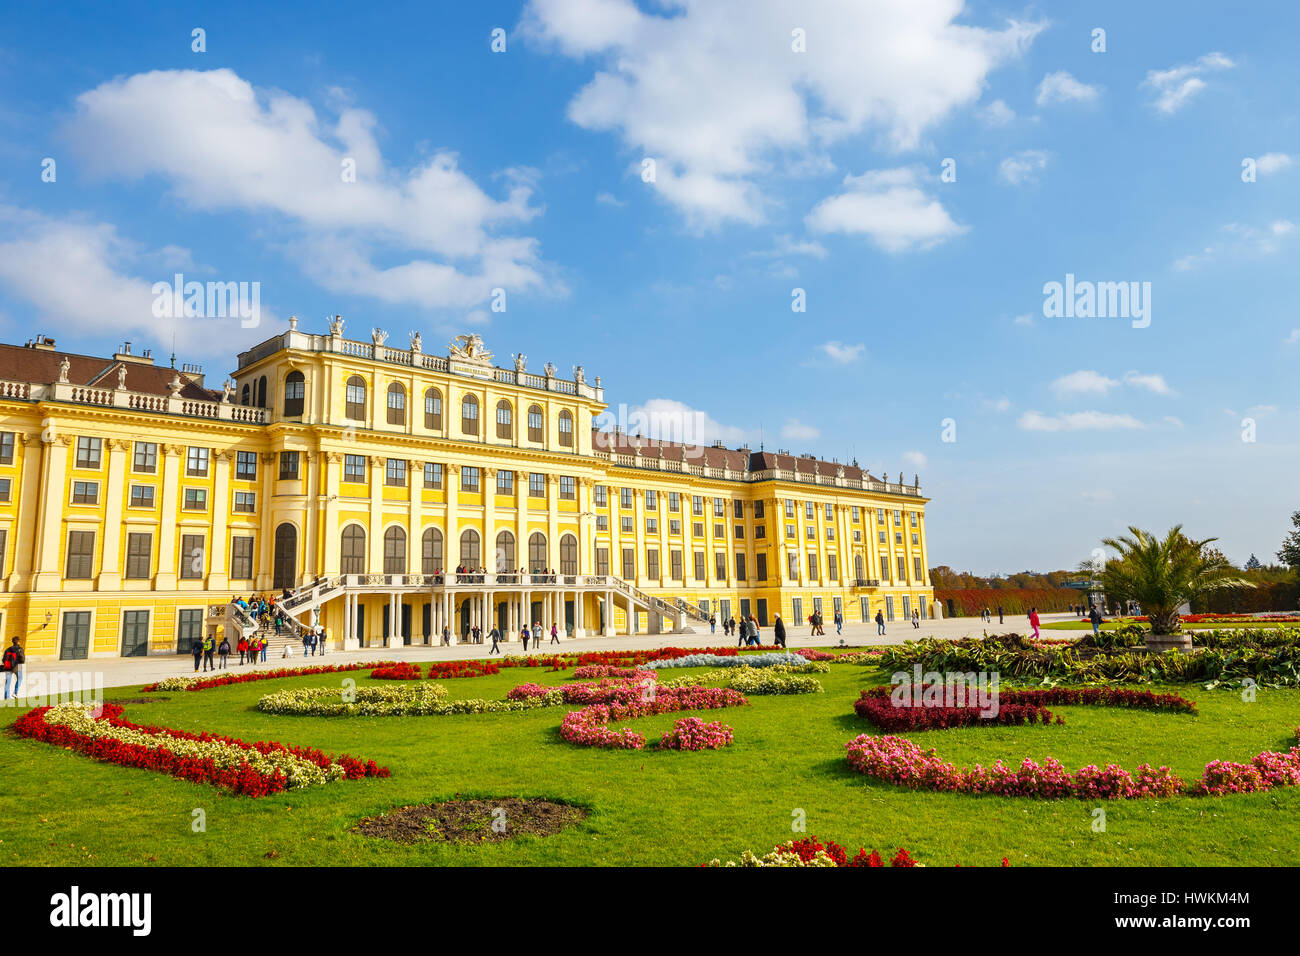 Wien, 14. Oktober 2016: Schloss Schönbrunn in Wien. Barocke Palast ist die ehemalige kaiserliche Sommerresidenz befindet sich in Wien, Österreich Stockfoto